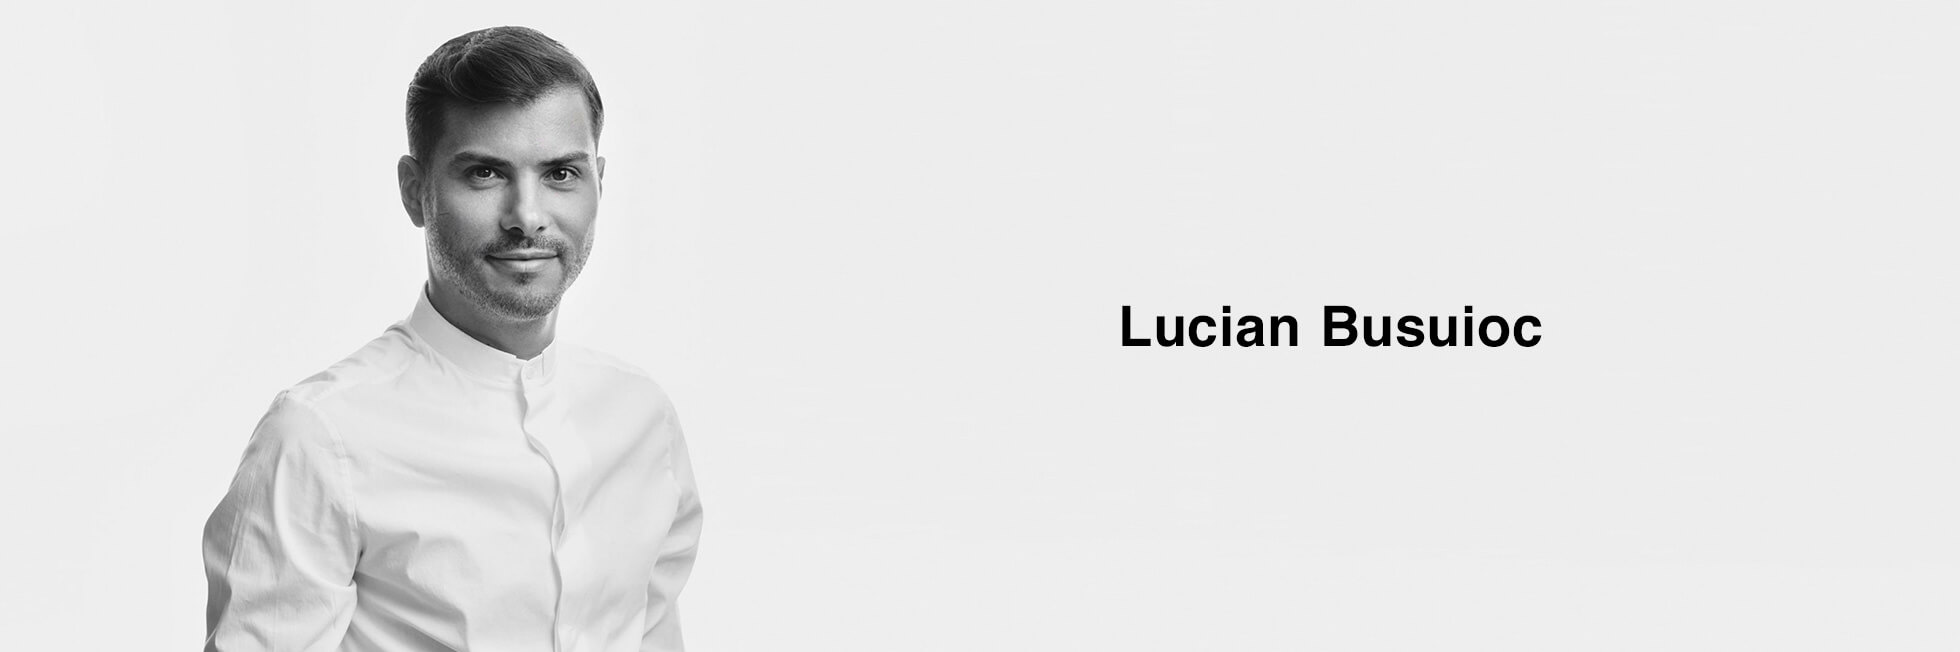 Lucian Busuioc